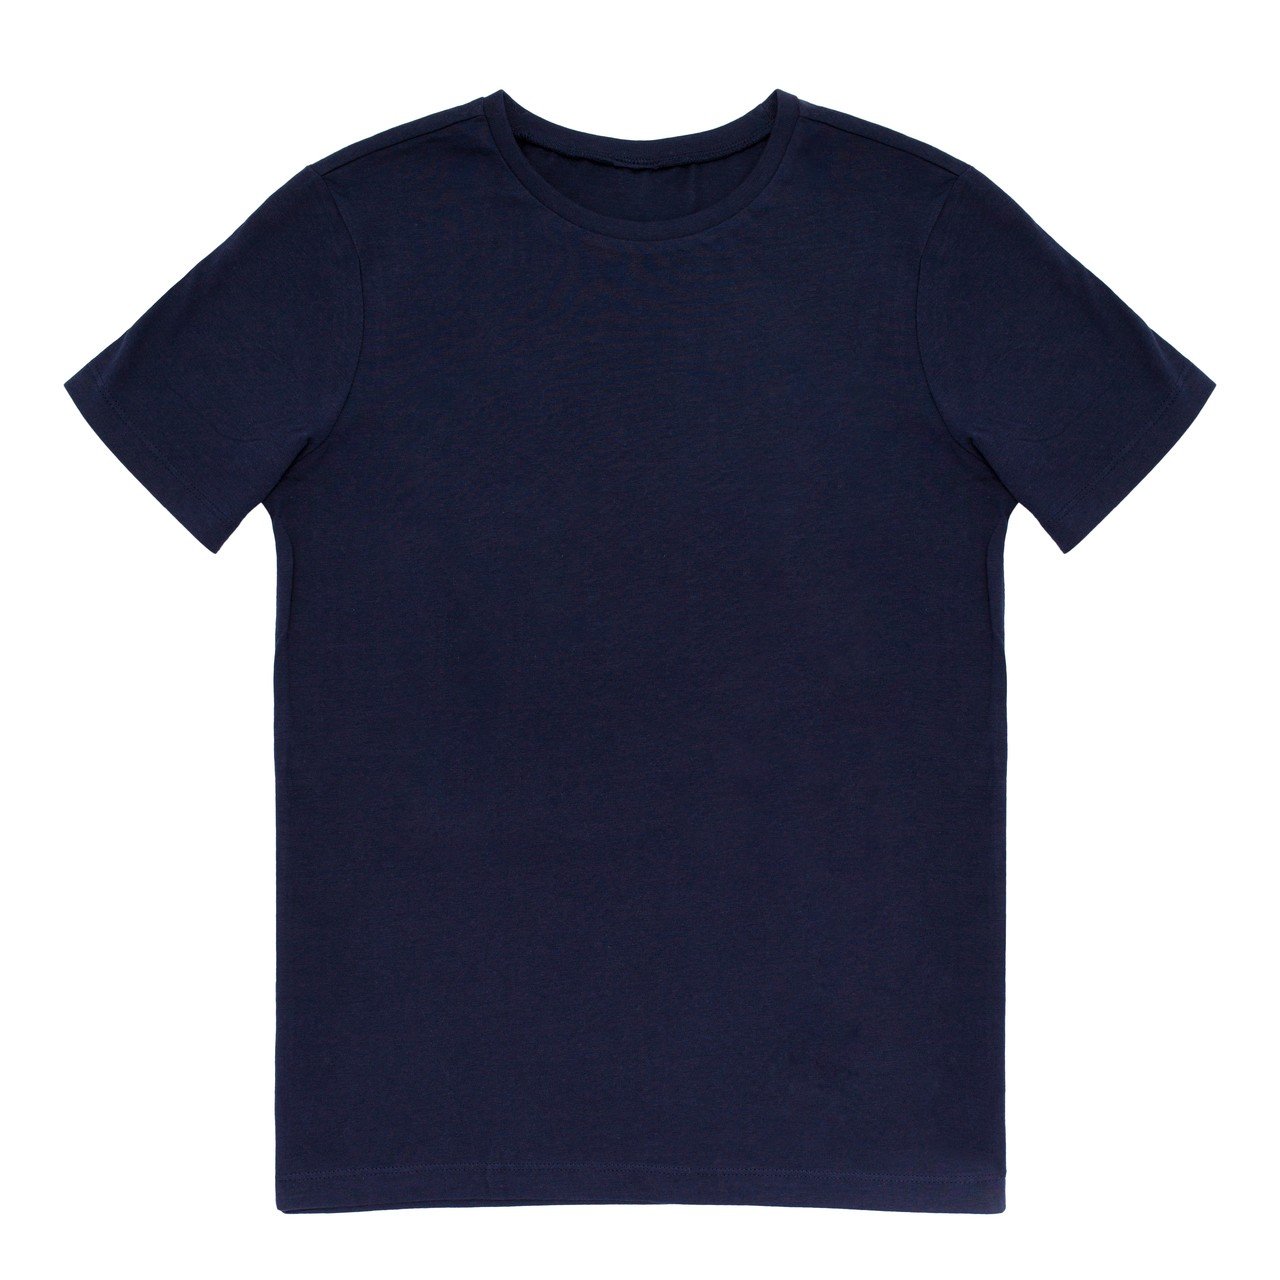 100% jersey cotton summer T-shirt - Navy